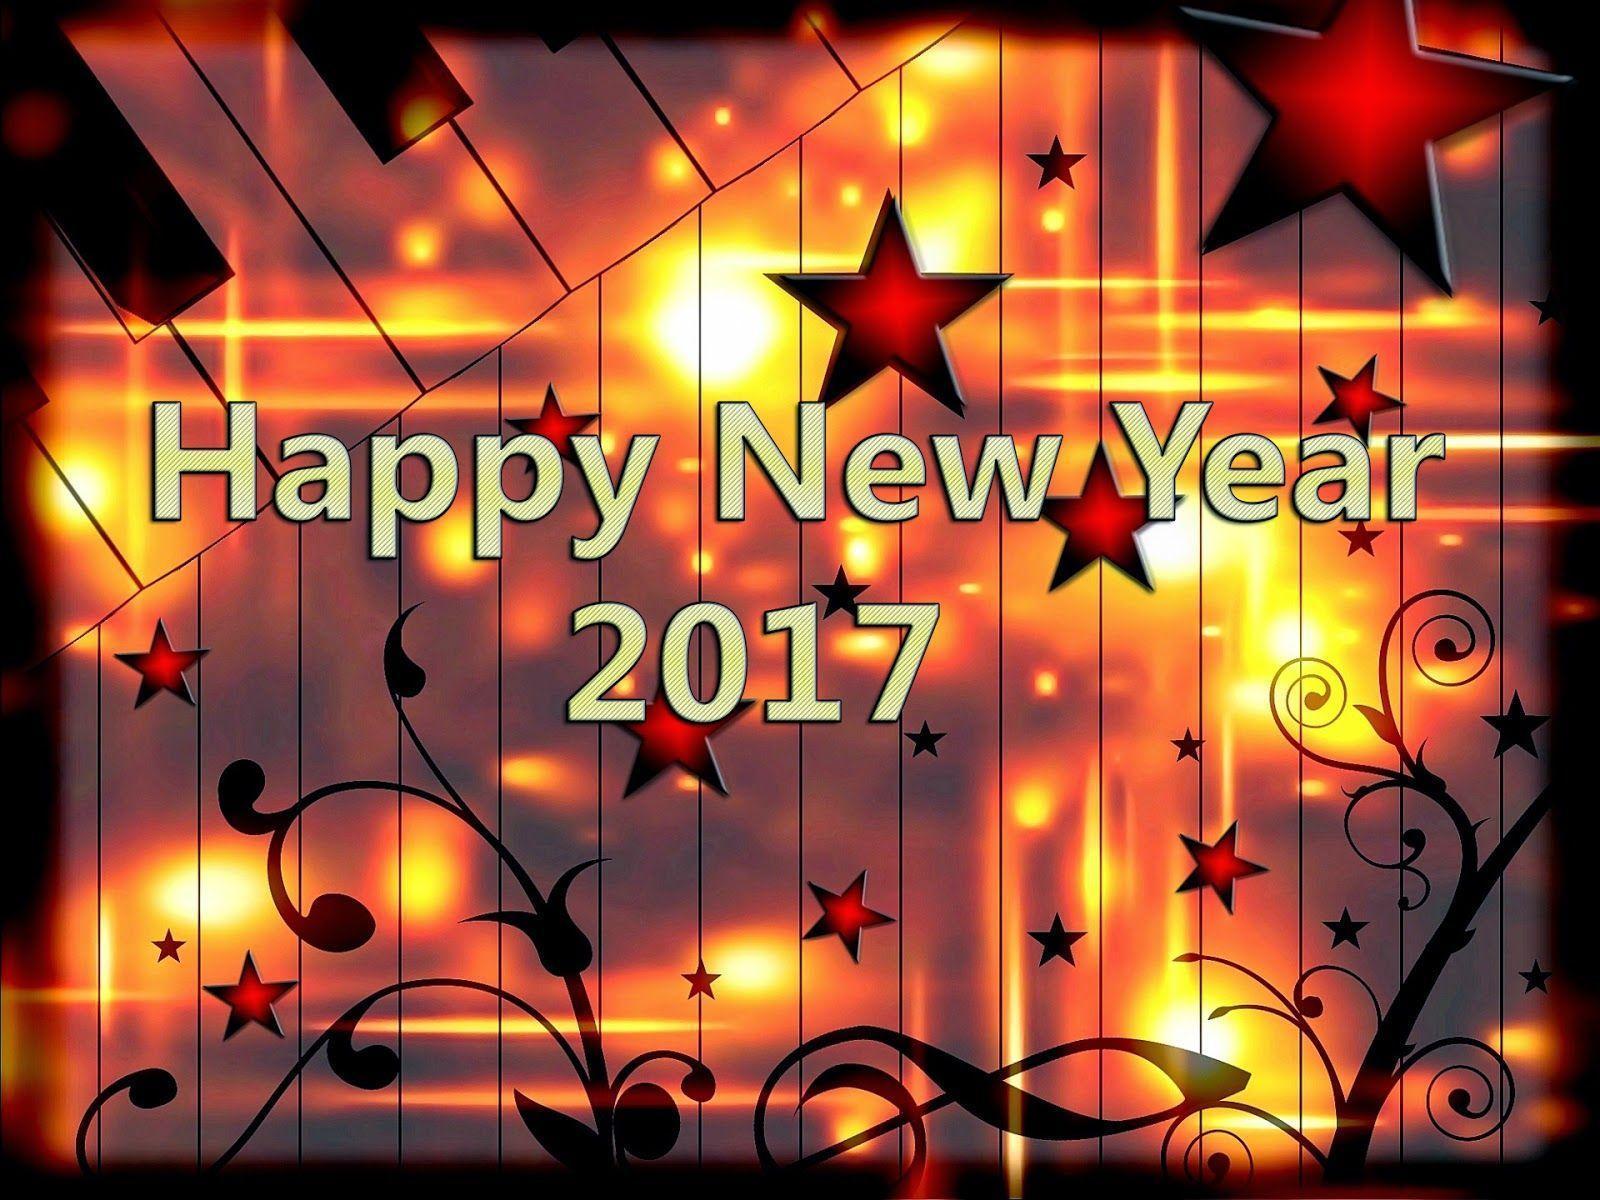 Happy New Year 2017. Happy New Year 2017 Image. Happy New Year